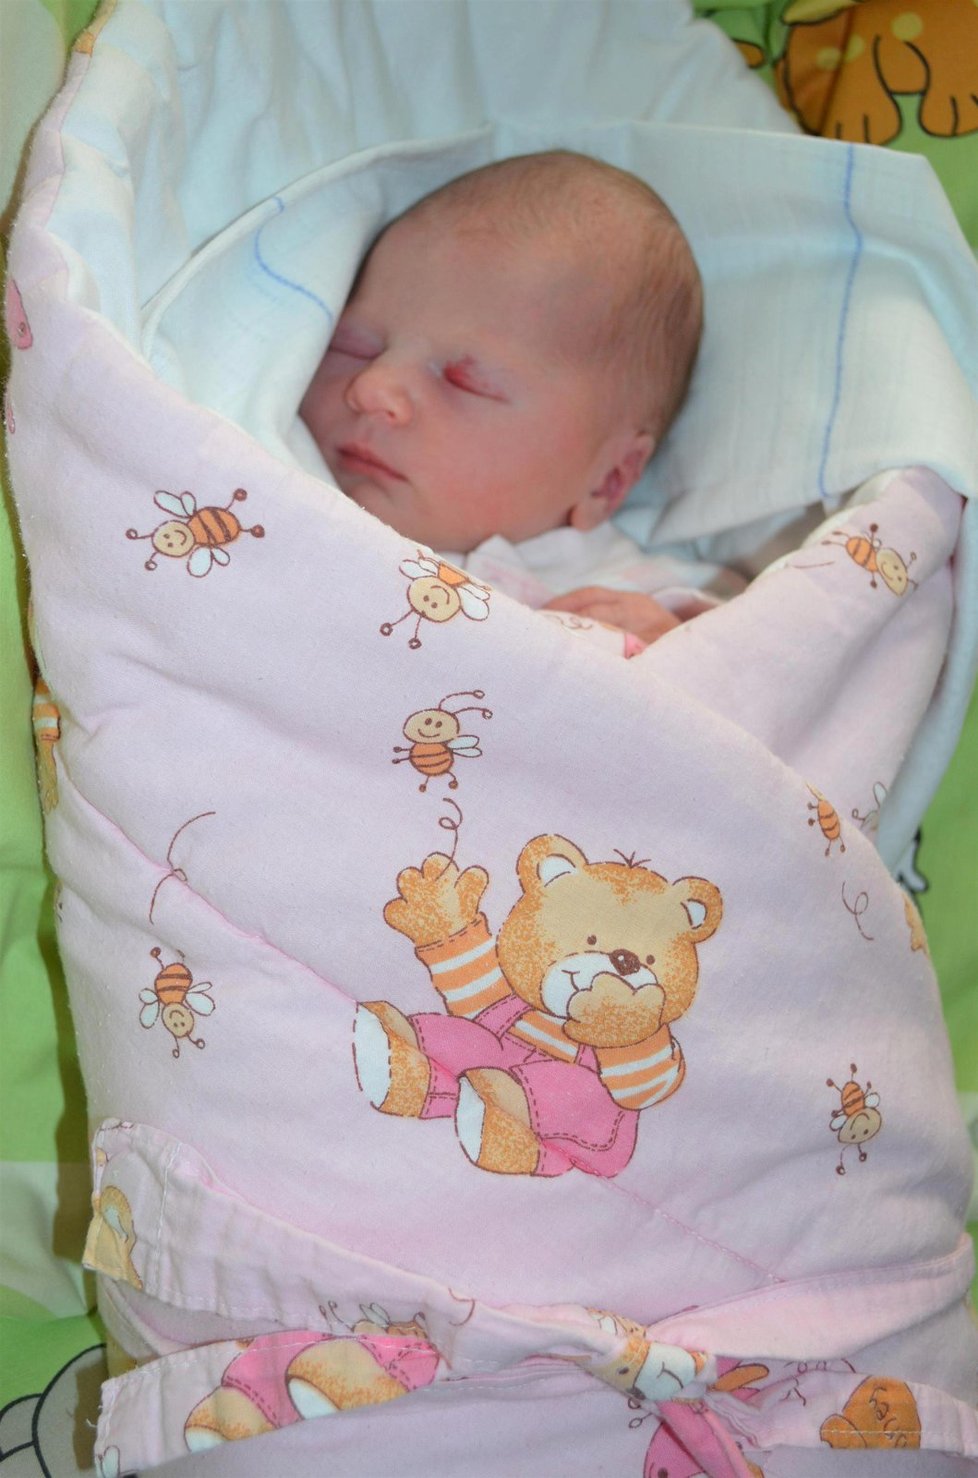 První dítě Česka v roce 2016: Alice se narodila v Havířově mamince Kateřině